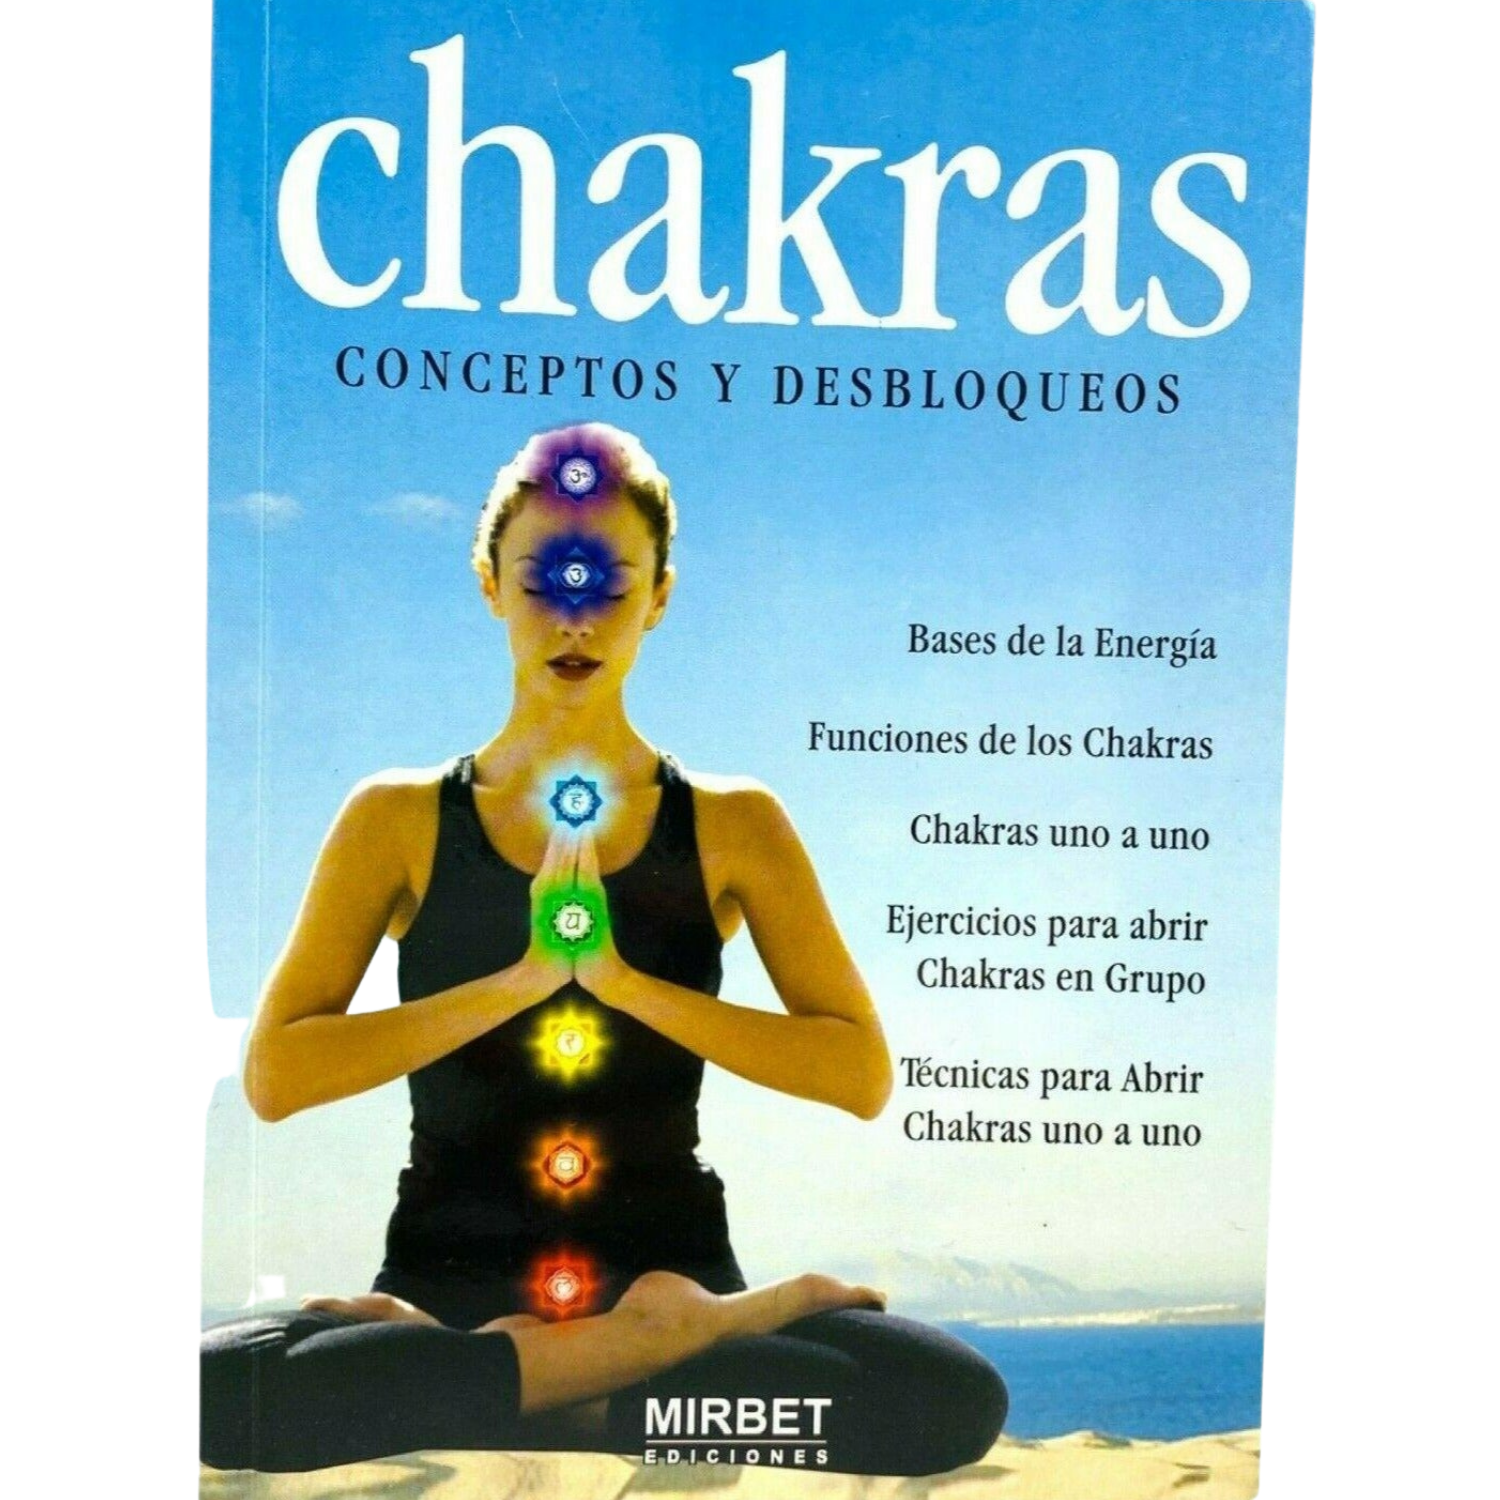 Chakras Conceptos Y Desbloqueos by NAHID ADEMAR